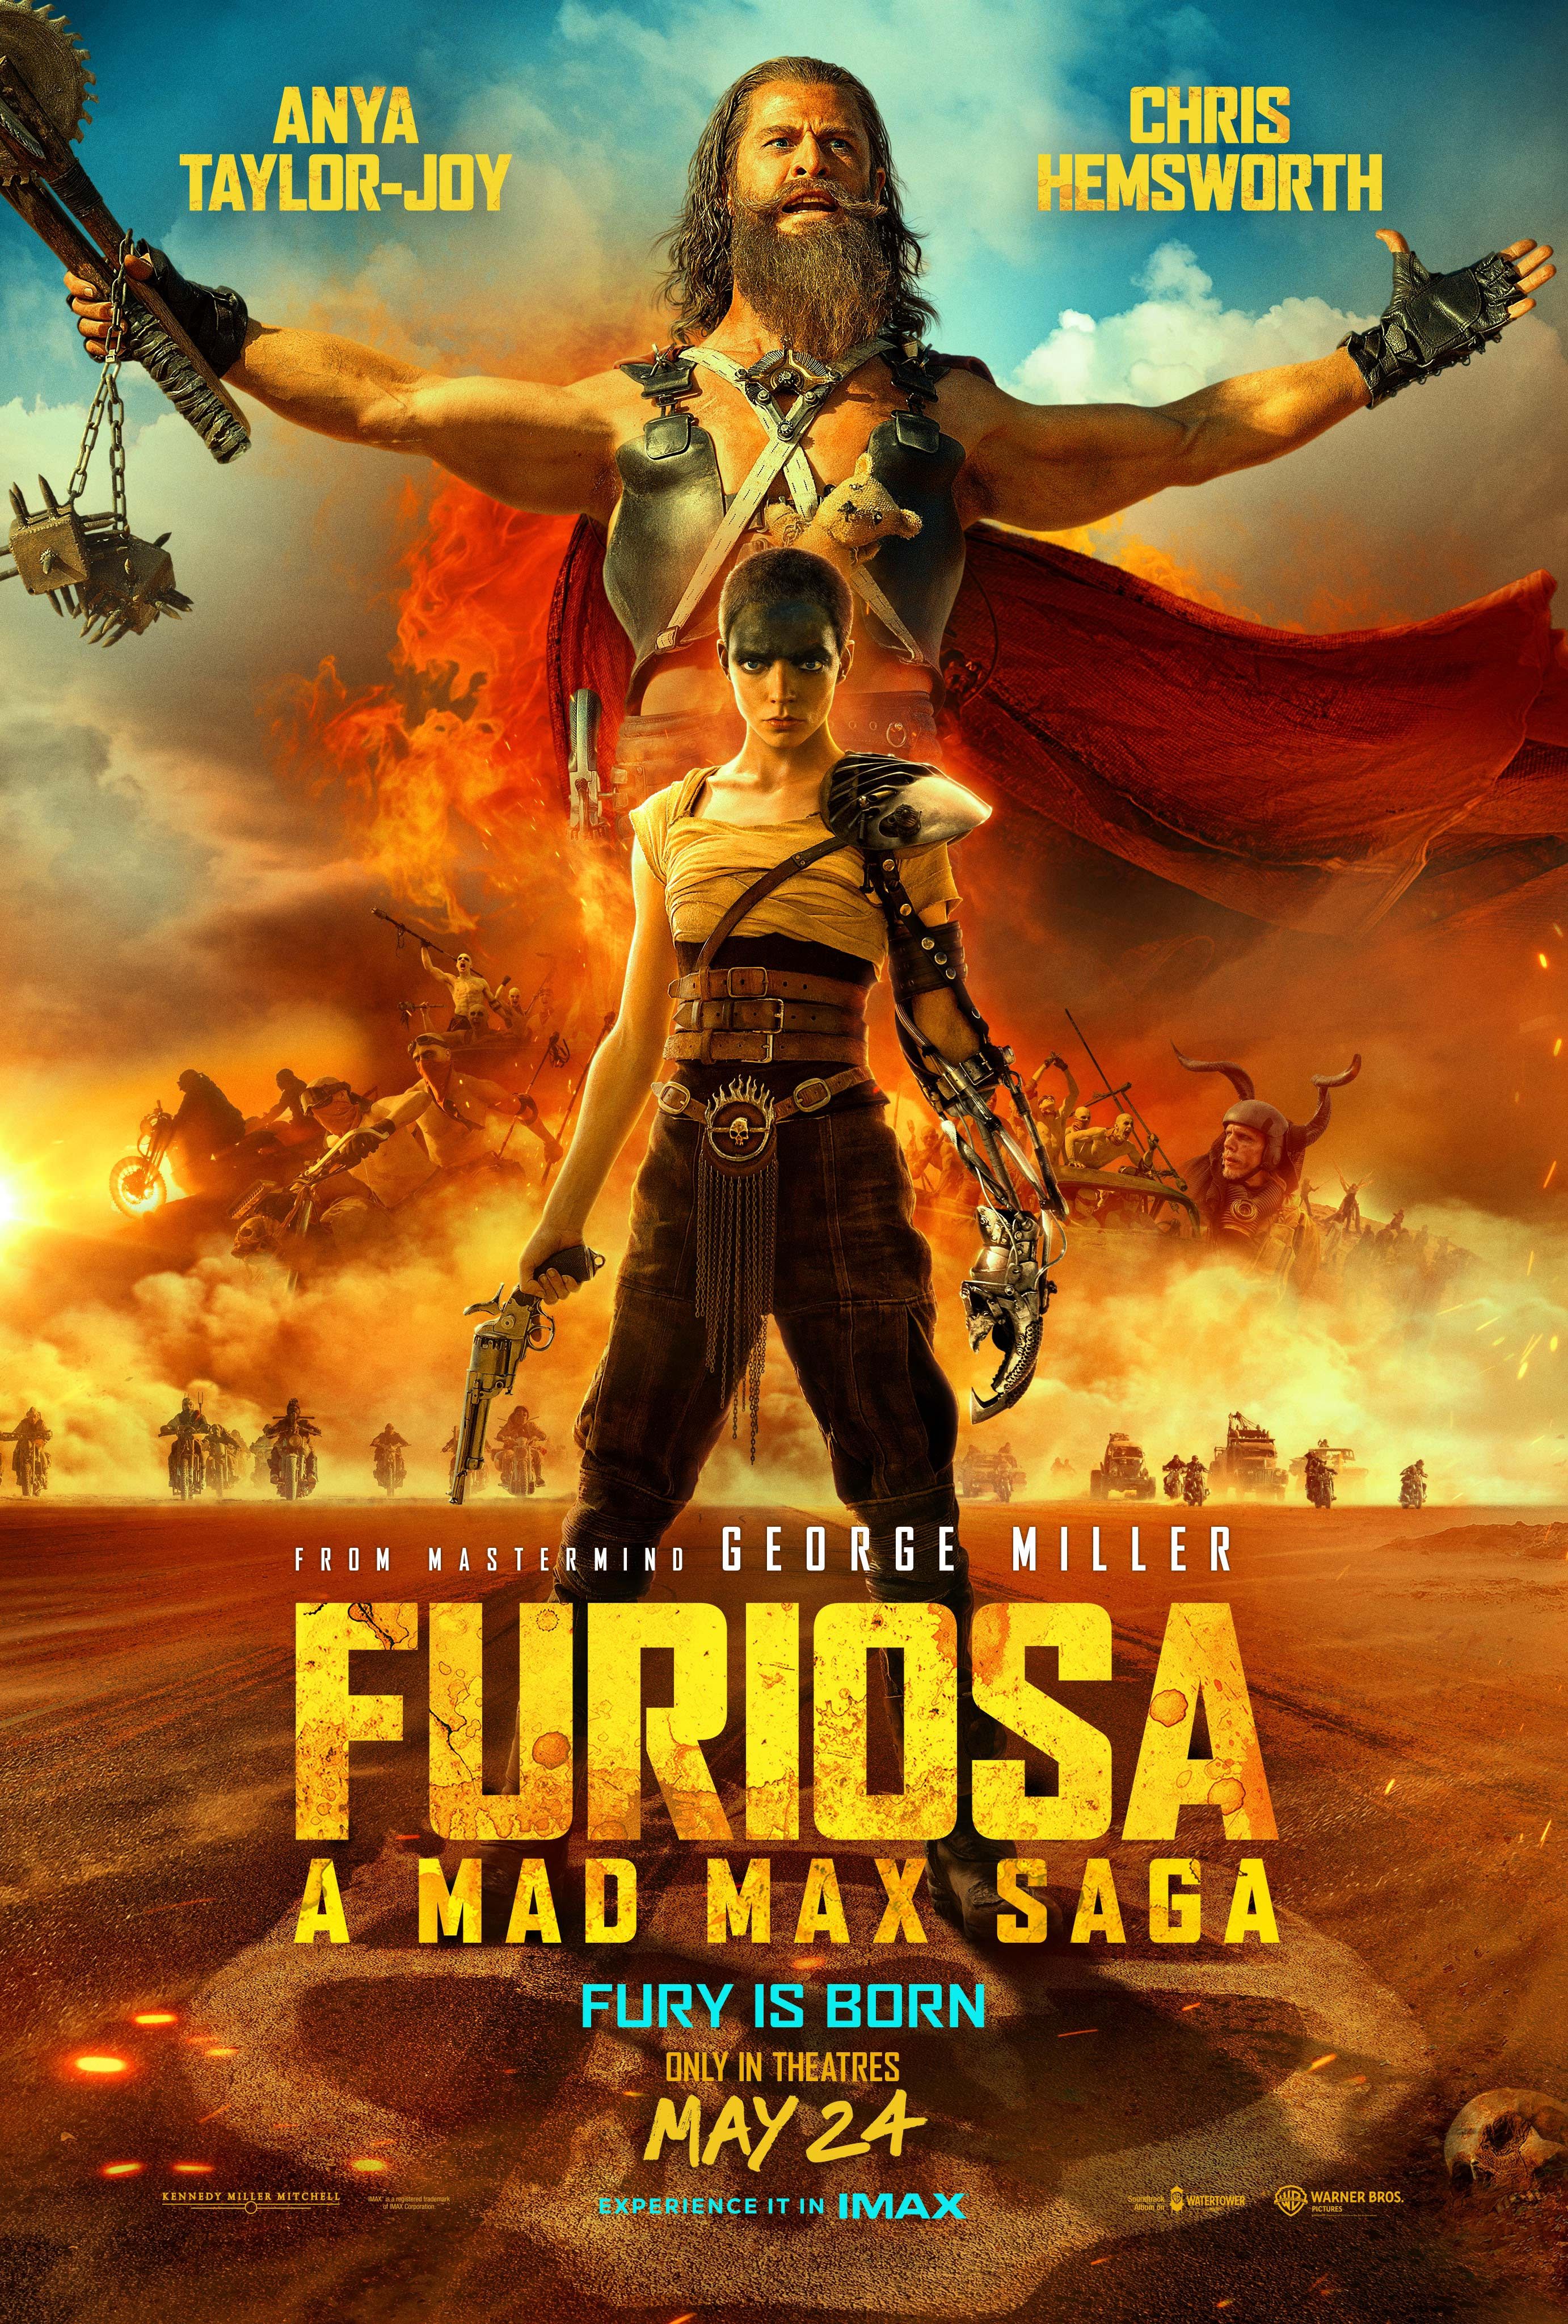 Nova Furiosa imagens de uma saga Mad Max mostram Anya Taylor Joy em ação e Chris Hemsworth se